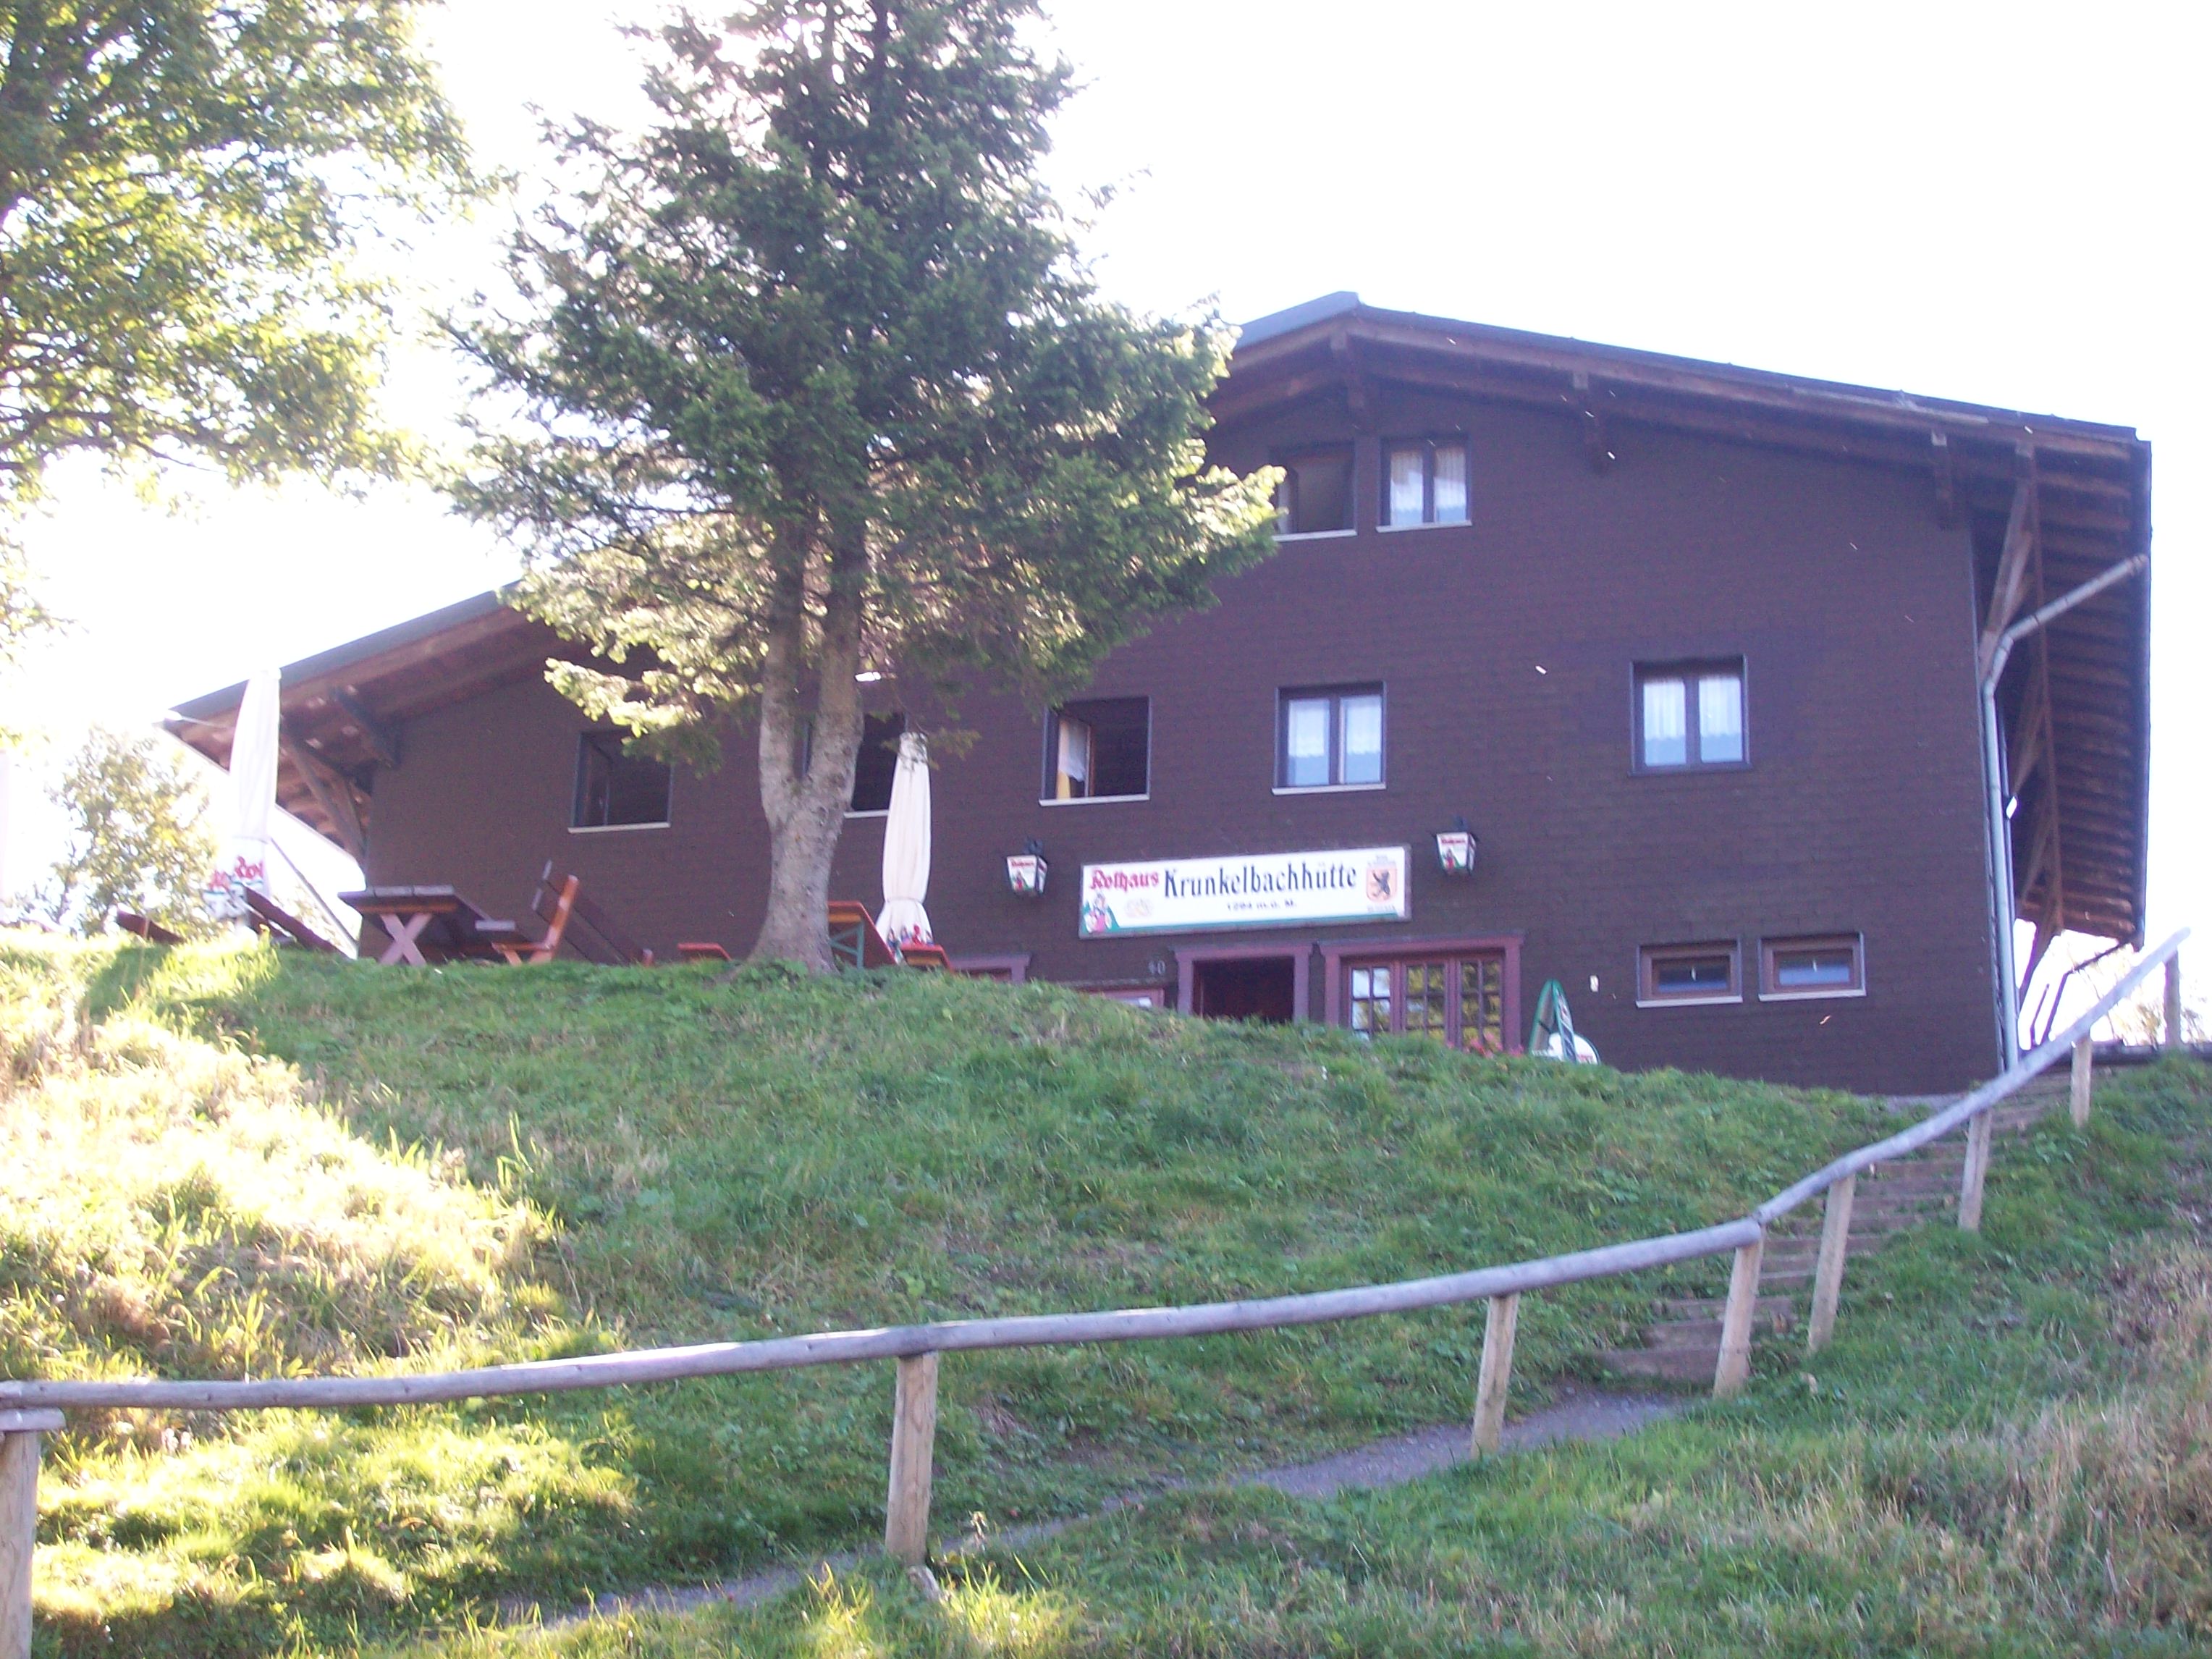 Bild 1 Zum Krunkelbach Berggaststätte in Bernau im Schwarzwald